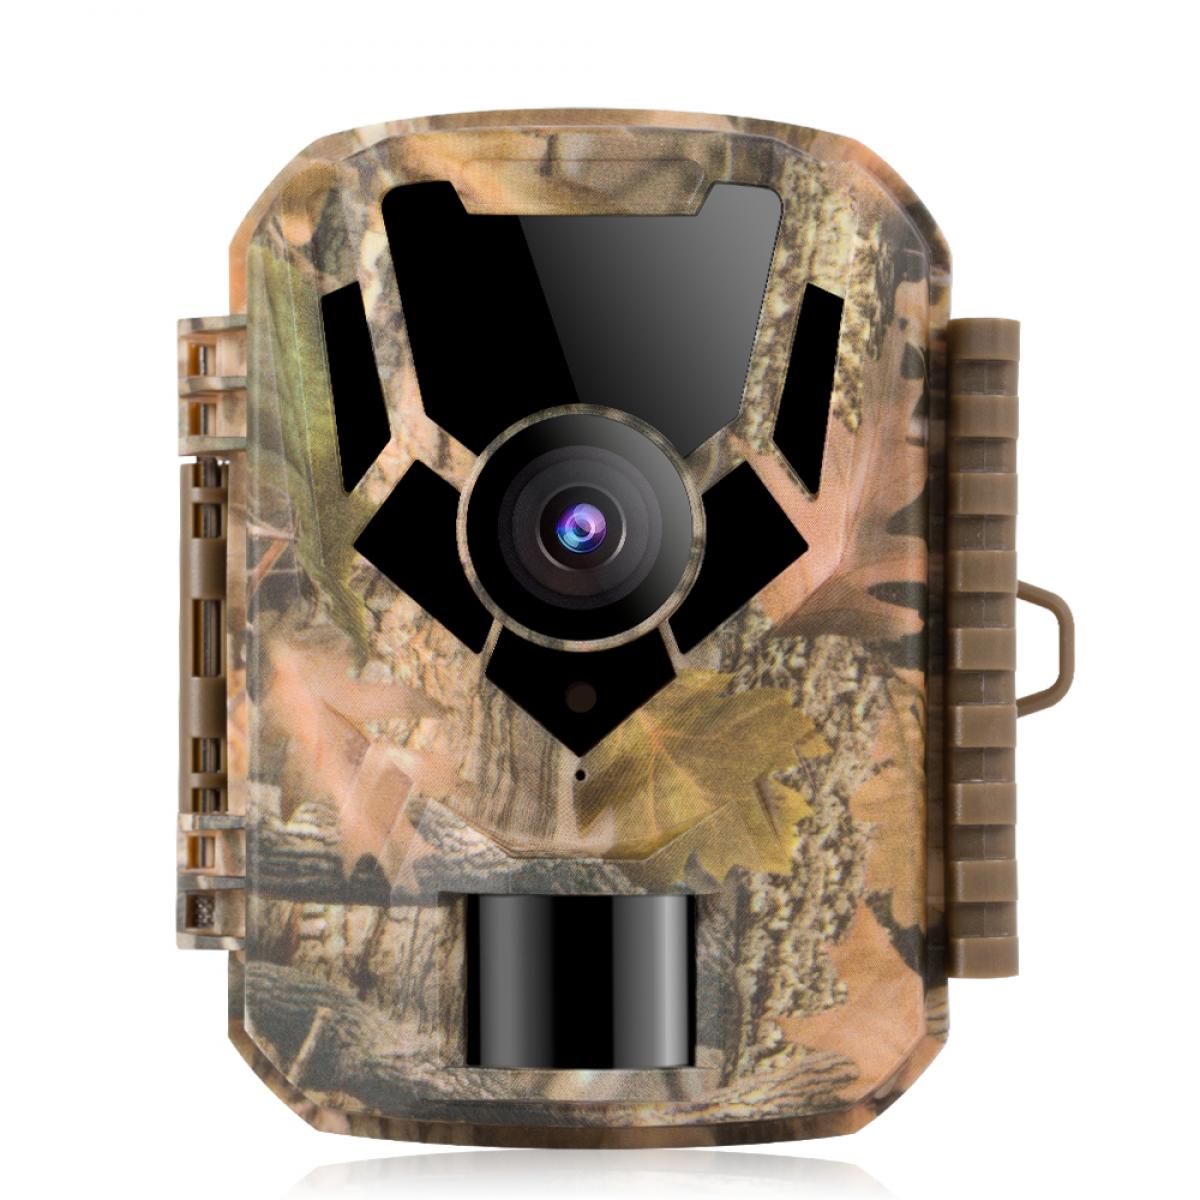 Wildkamera16MP 1080P Wildkamera mit Bewegungsmelder Nachtsicht Wildtierkamera 0,2 s Auslösezeit IP66 Wasserdichte Nachtsichtgerät Jagd 